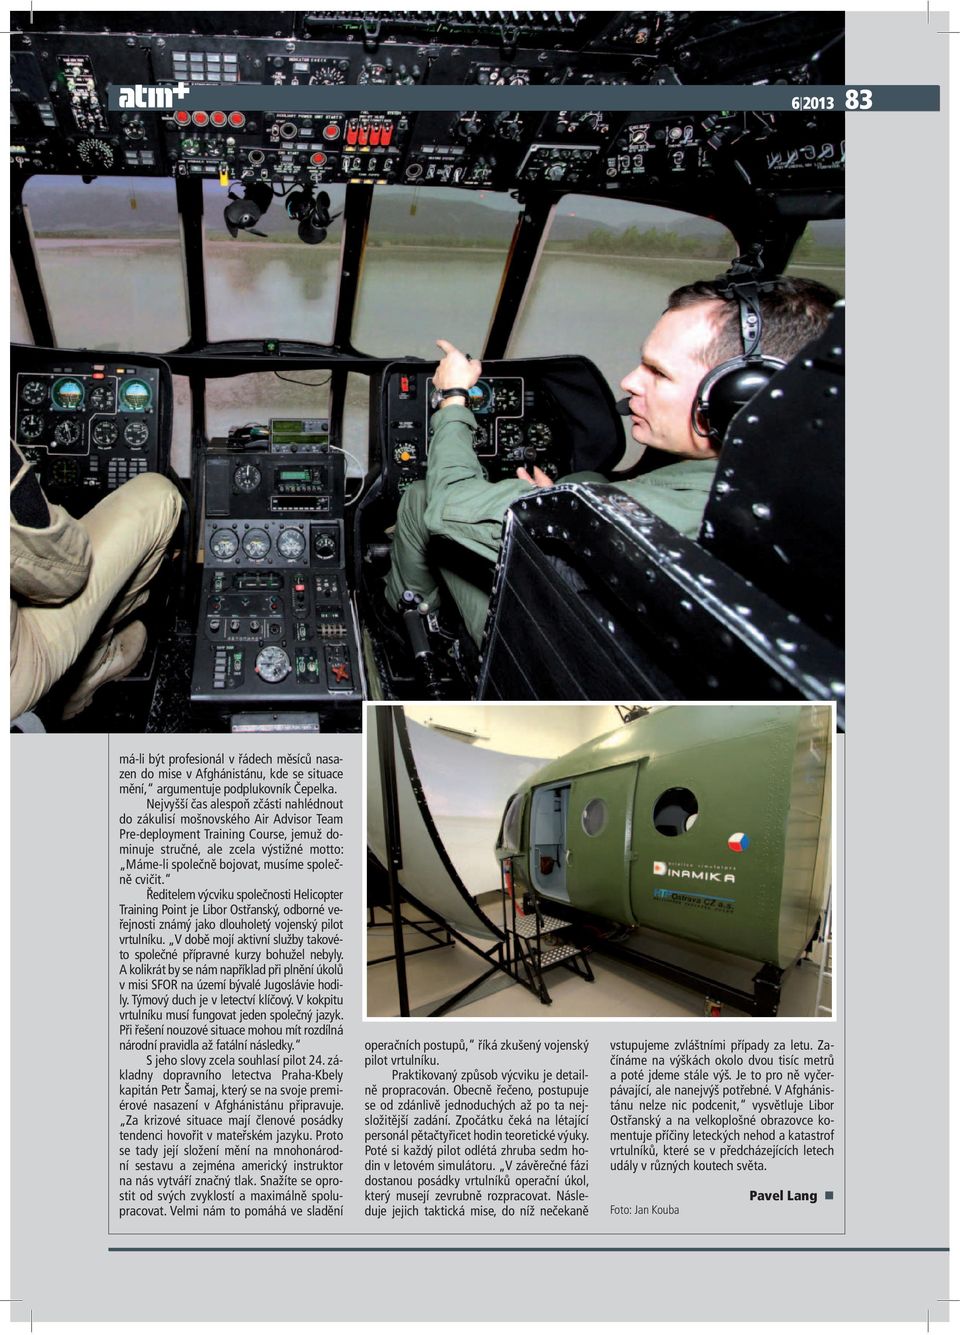 společně cvičit. Ředitelem výcviku společnosti Helicopter Training Point je Libor Ostřanský, odborné veřejnosti známý jako dlouholetý vojenský pilot vrtulníku.